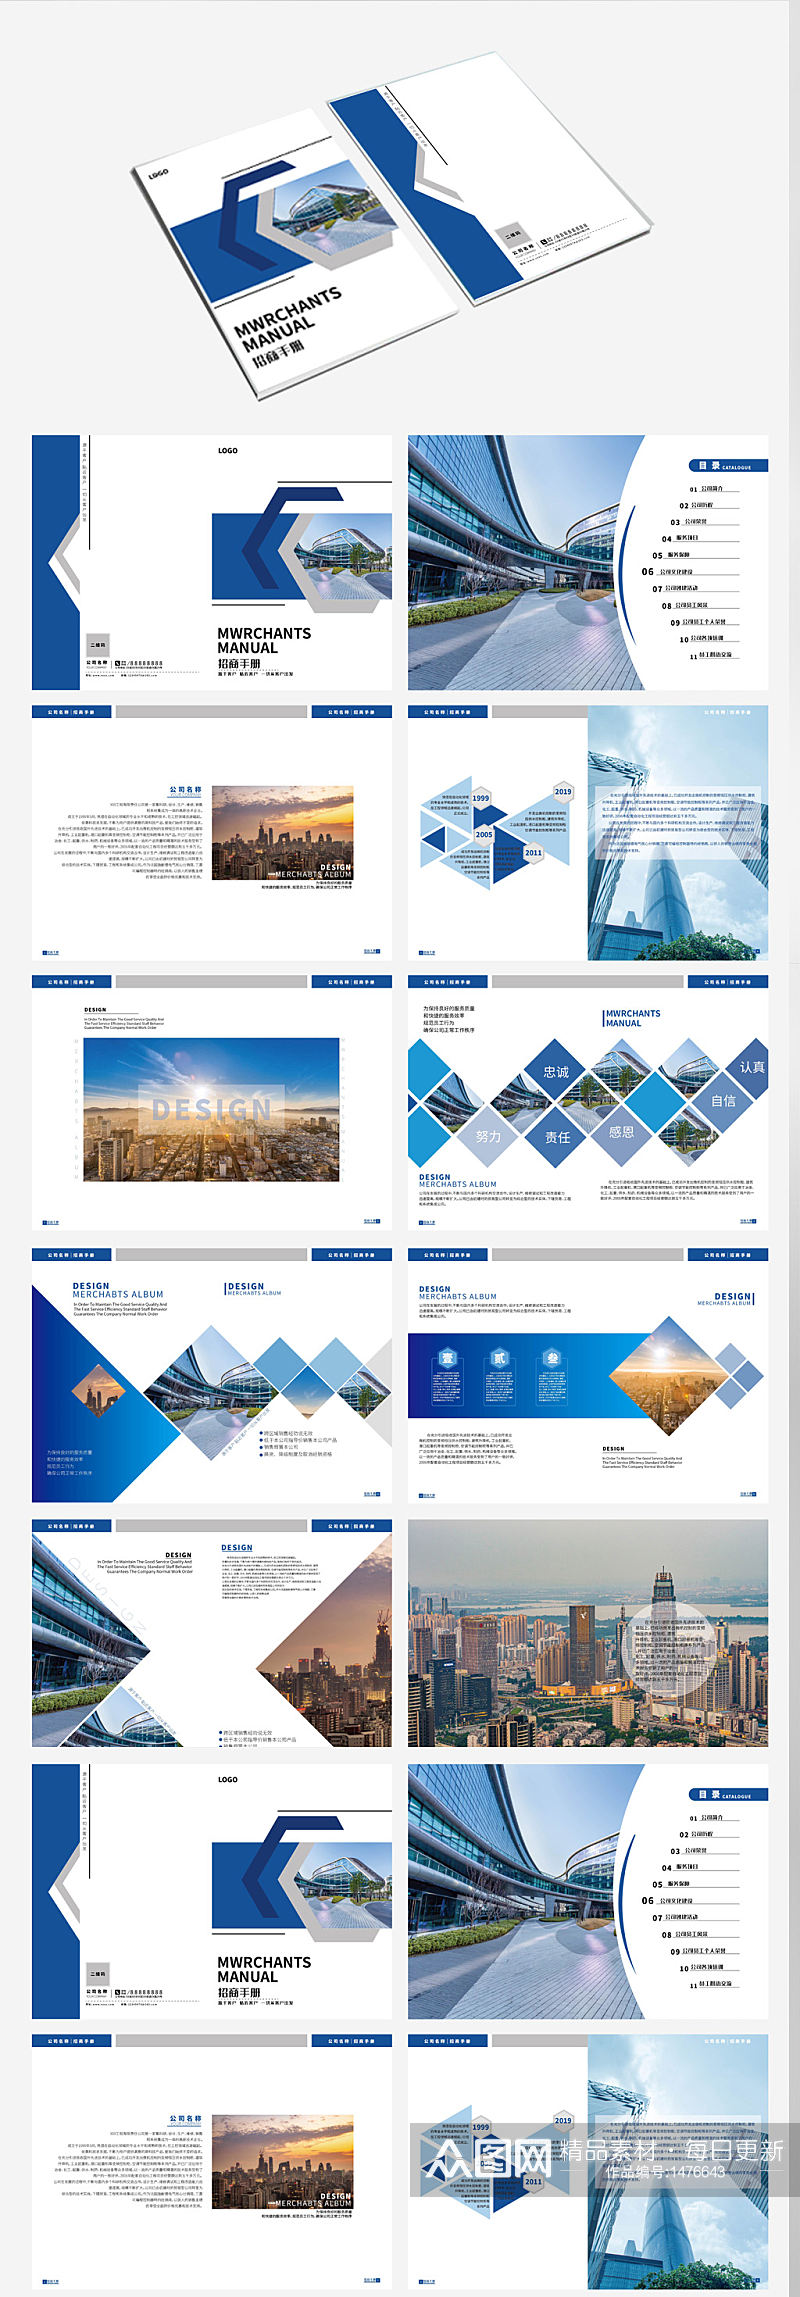 蓝色信息产业科技企业宣传画册目录素材